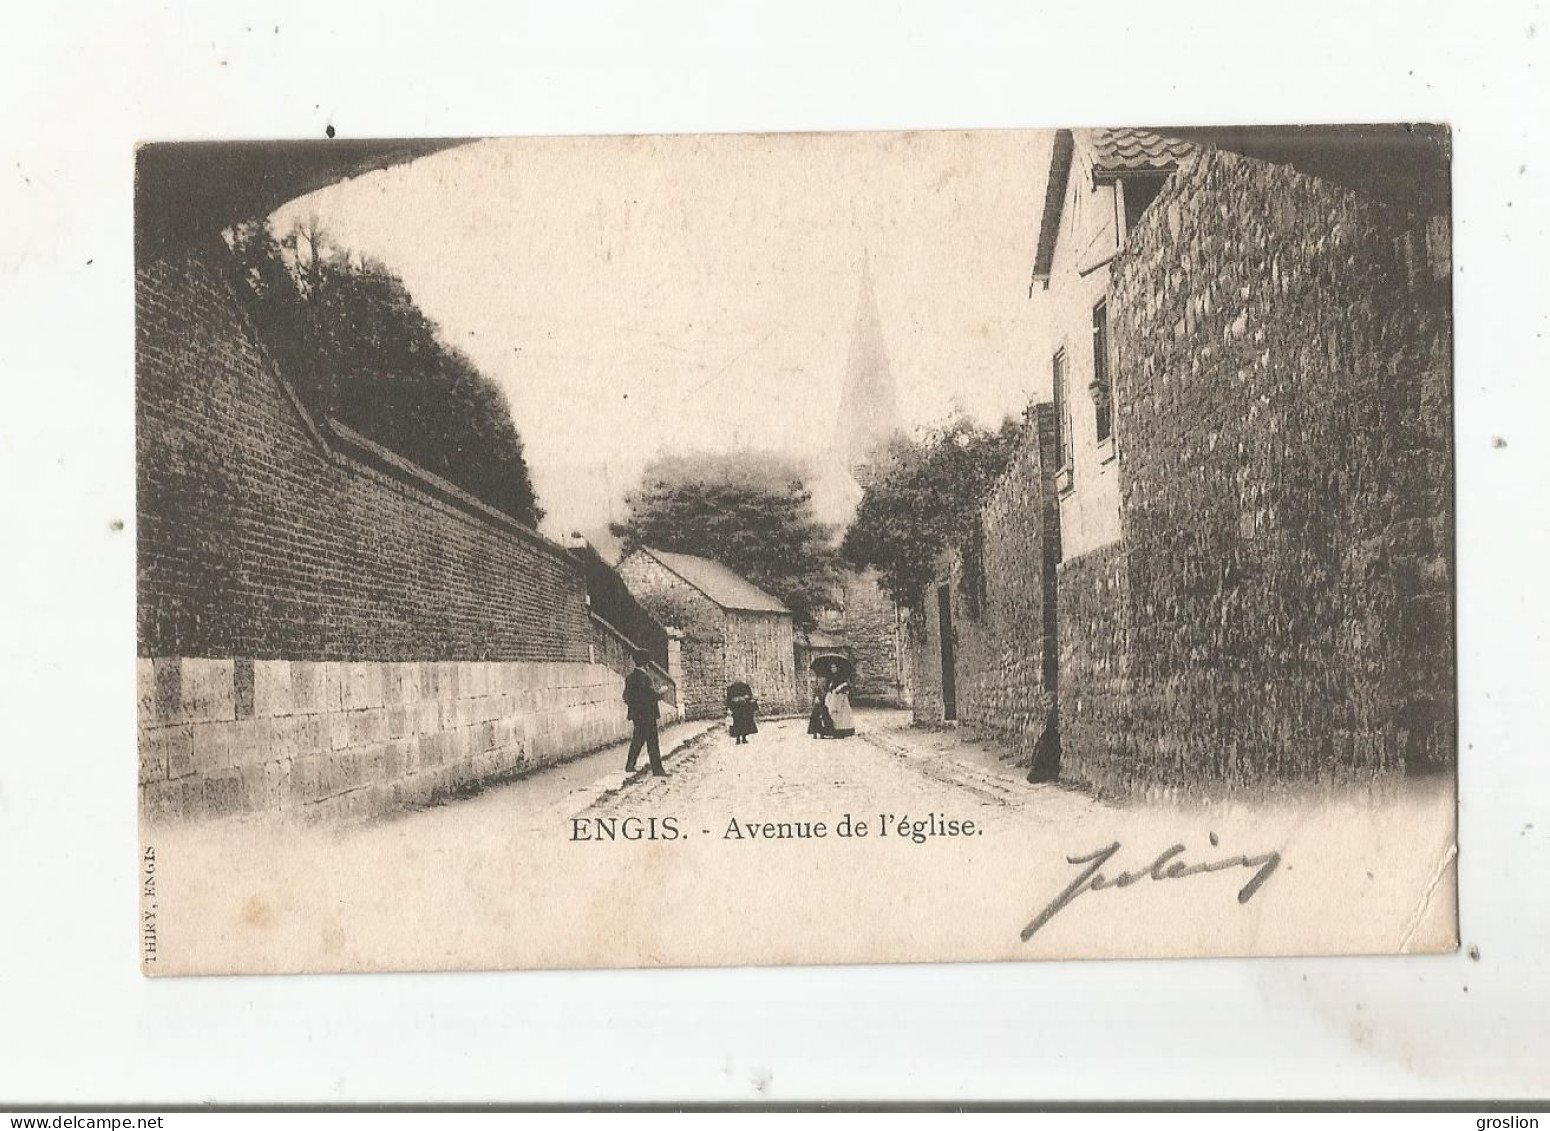 ENGIS AVENUE DE L'EGLISE (PETITE ANIMATION) 1903 - Engis